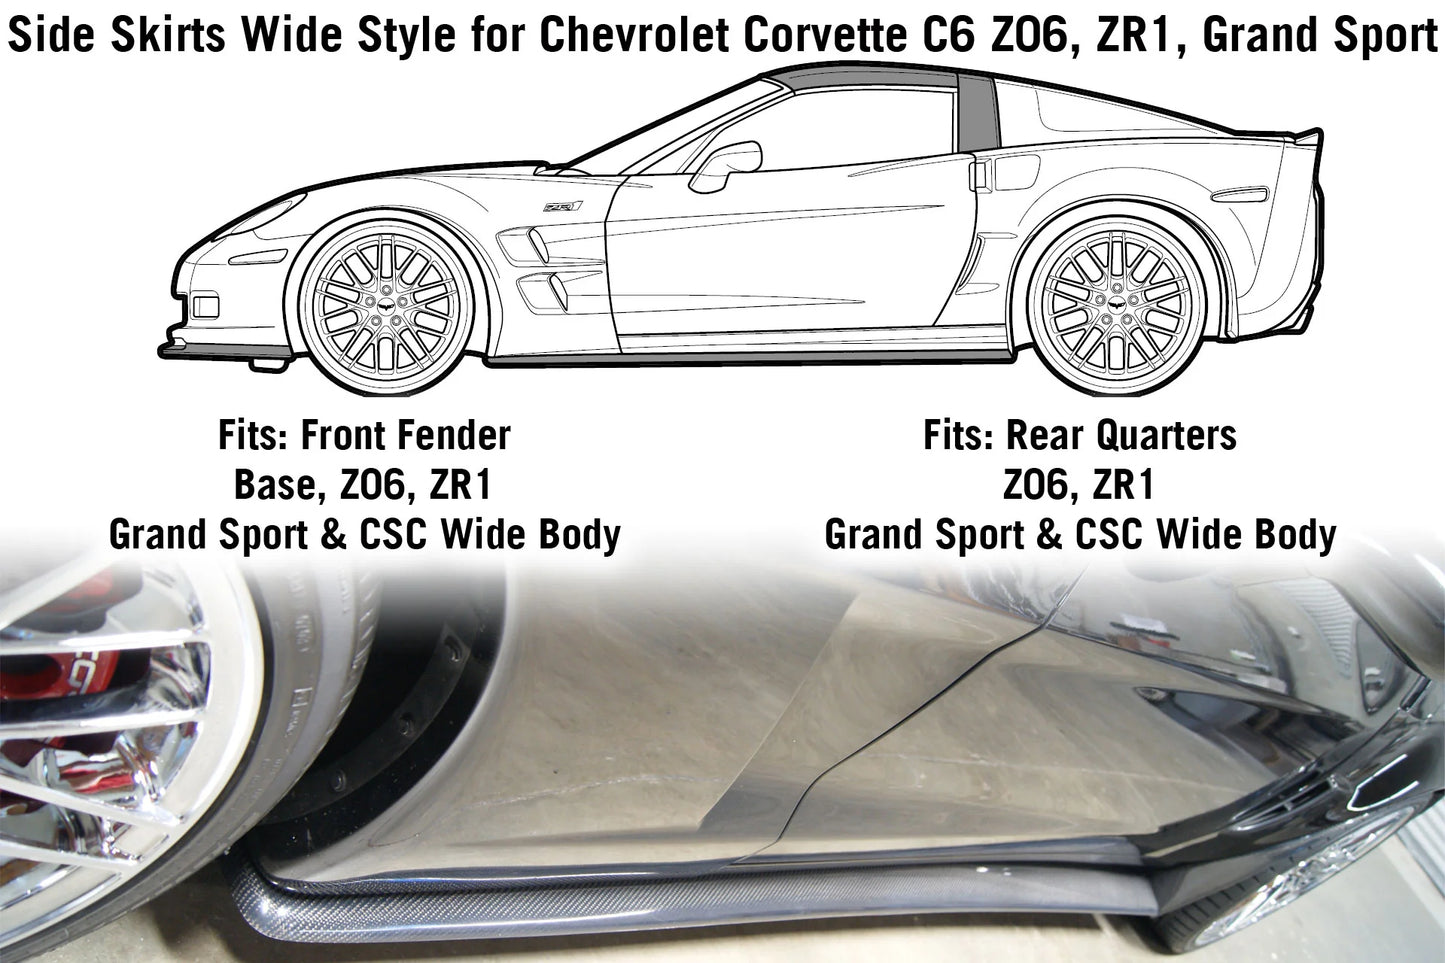 Side Skirts Wide Style for Chevrolet Corvette C6 Z06, ZR1, Grand Sport